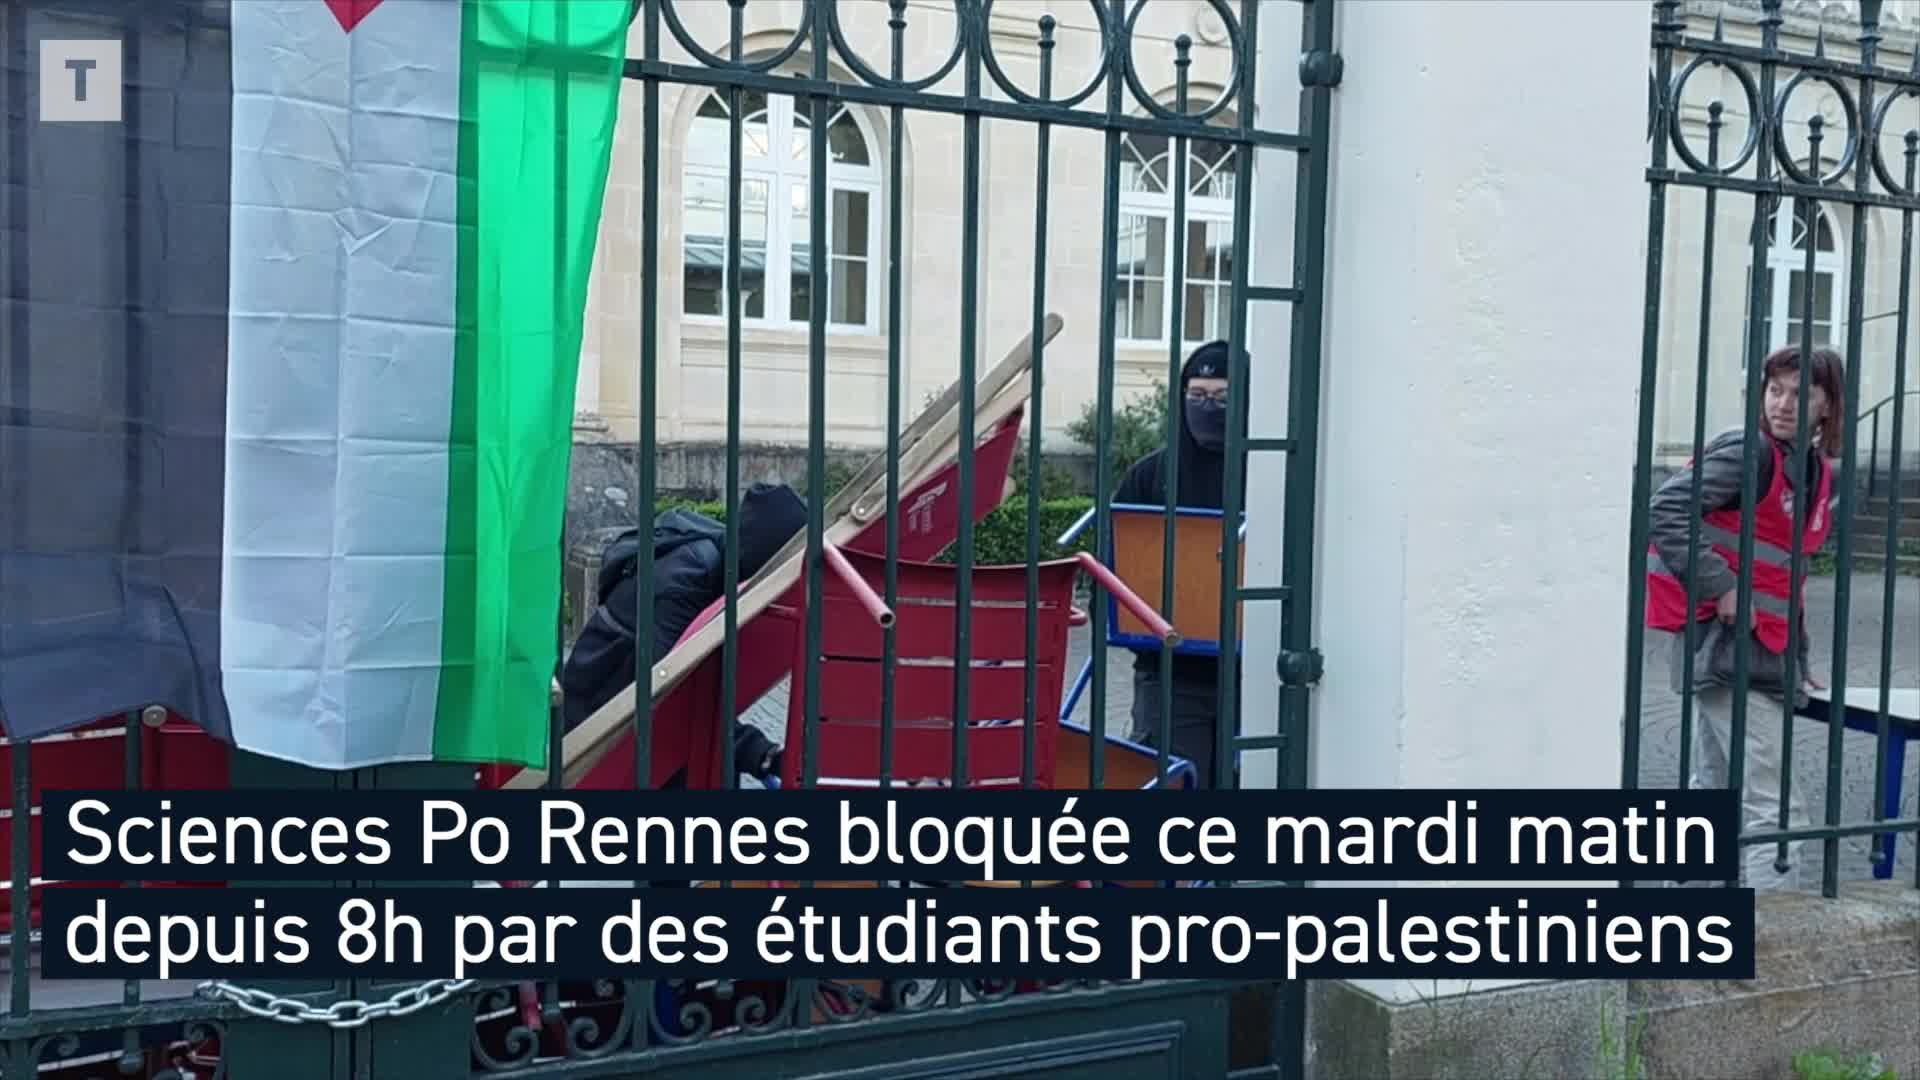 Manifestations pro-palestiniennes dans les universités : le mouvement étudiant se généralise [Vidéo]